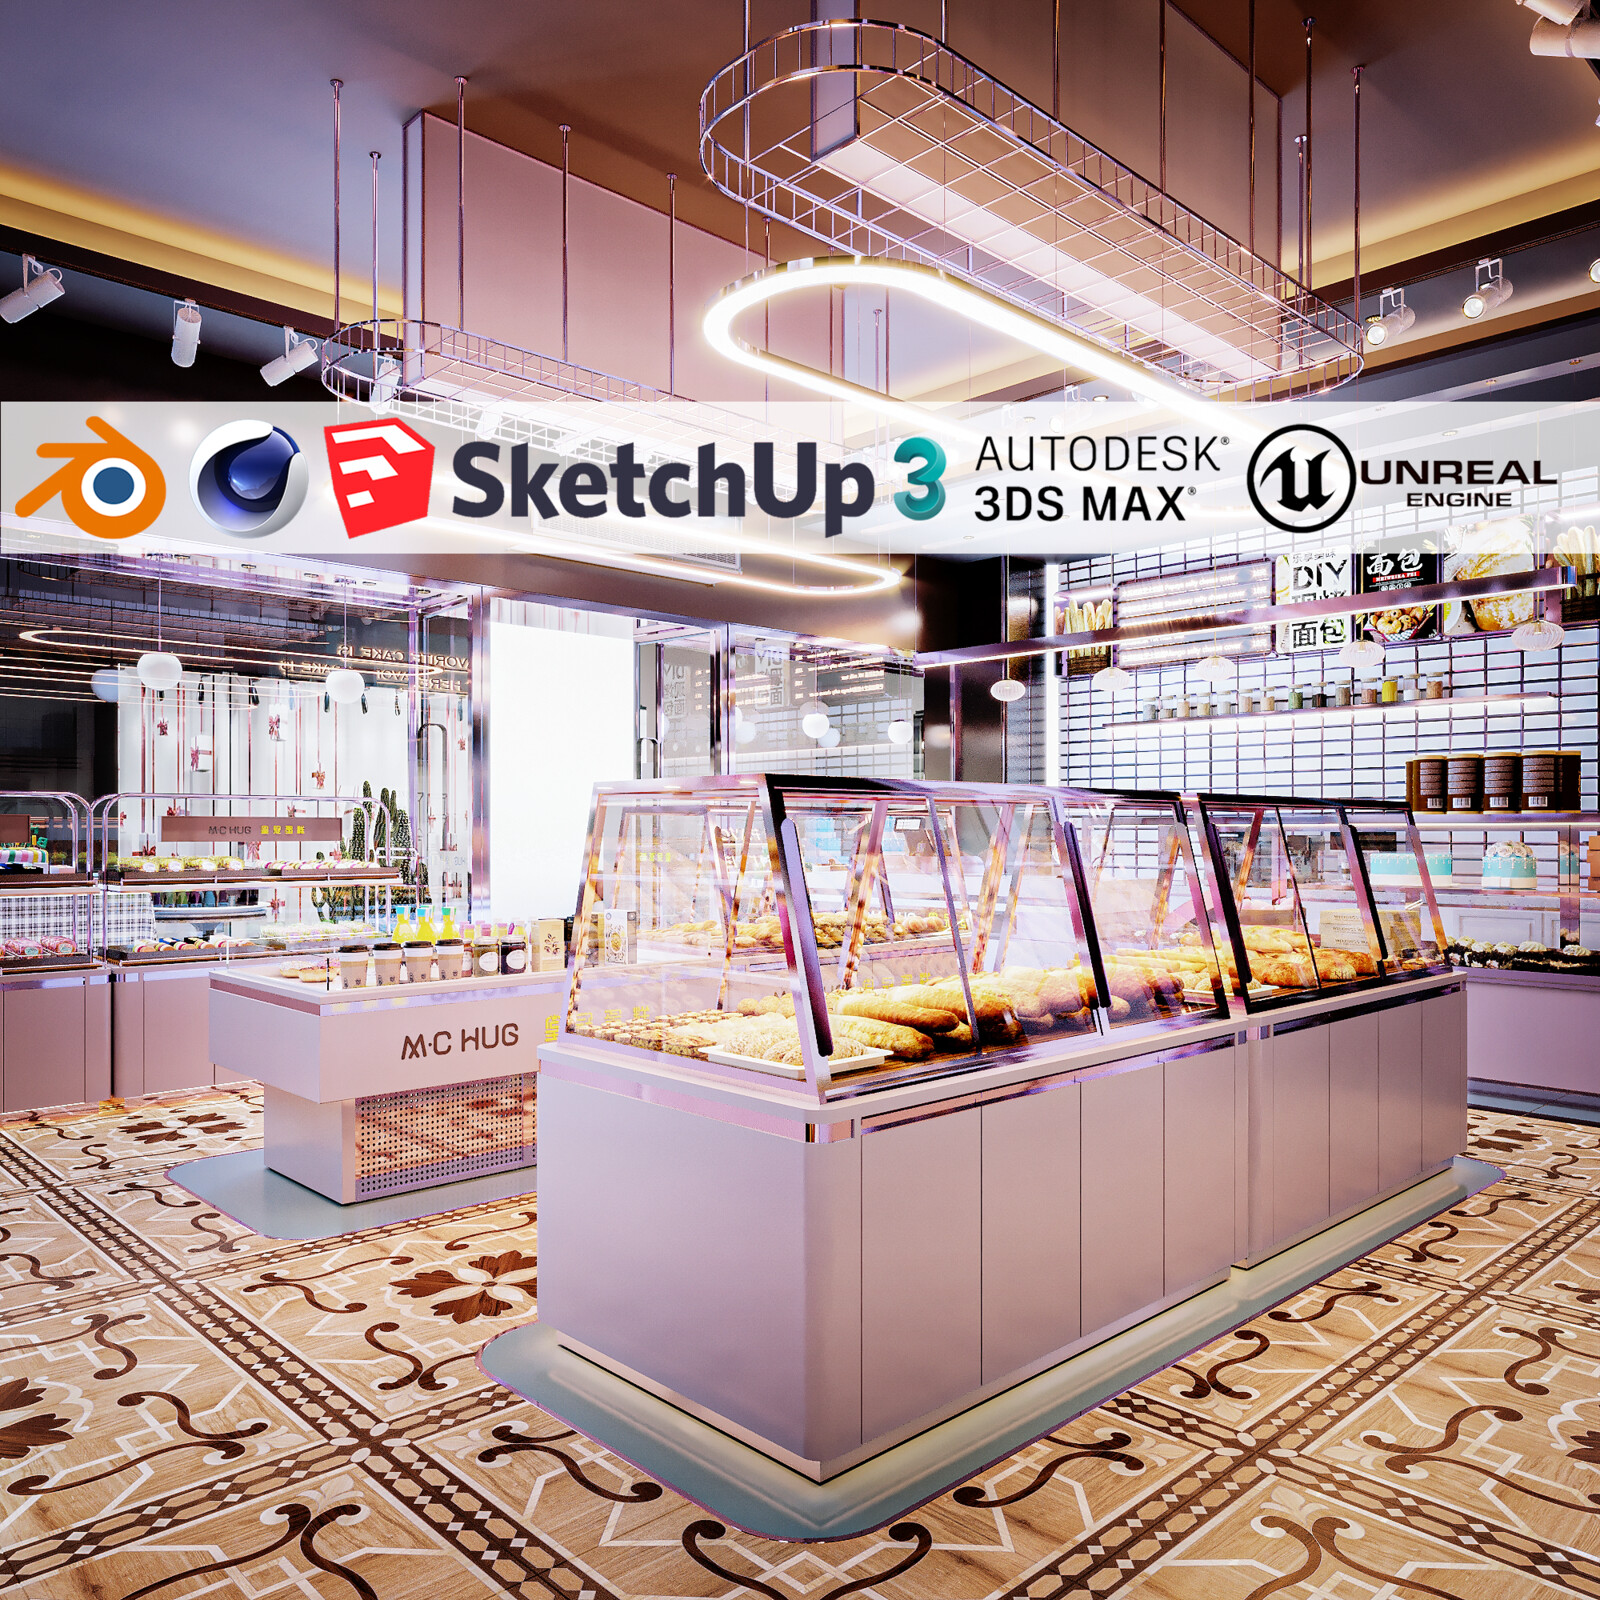 Bakery Shop (Unreal Engine - Blender - Cinema4D - Sketchup- 3DsMax - FBX - OBJ)